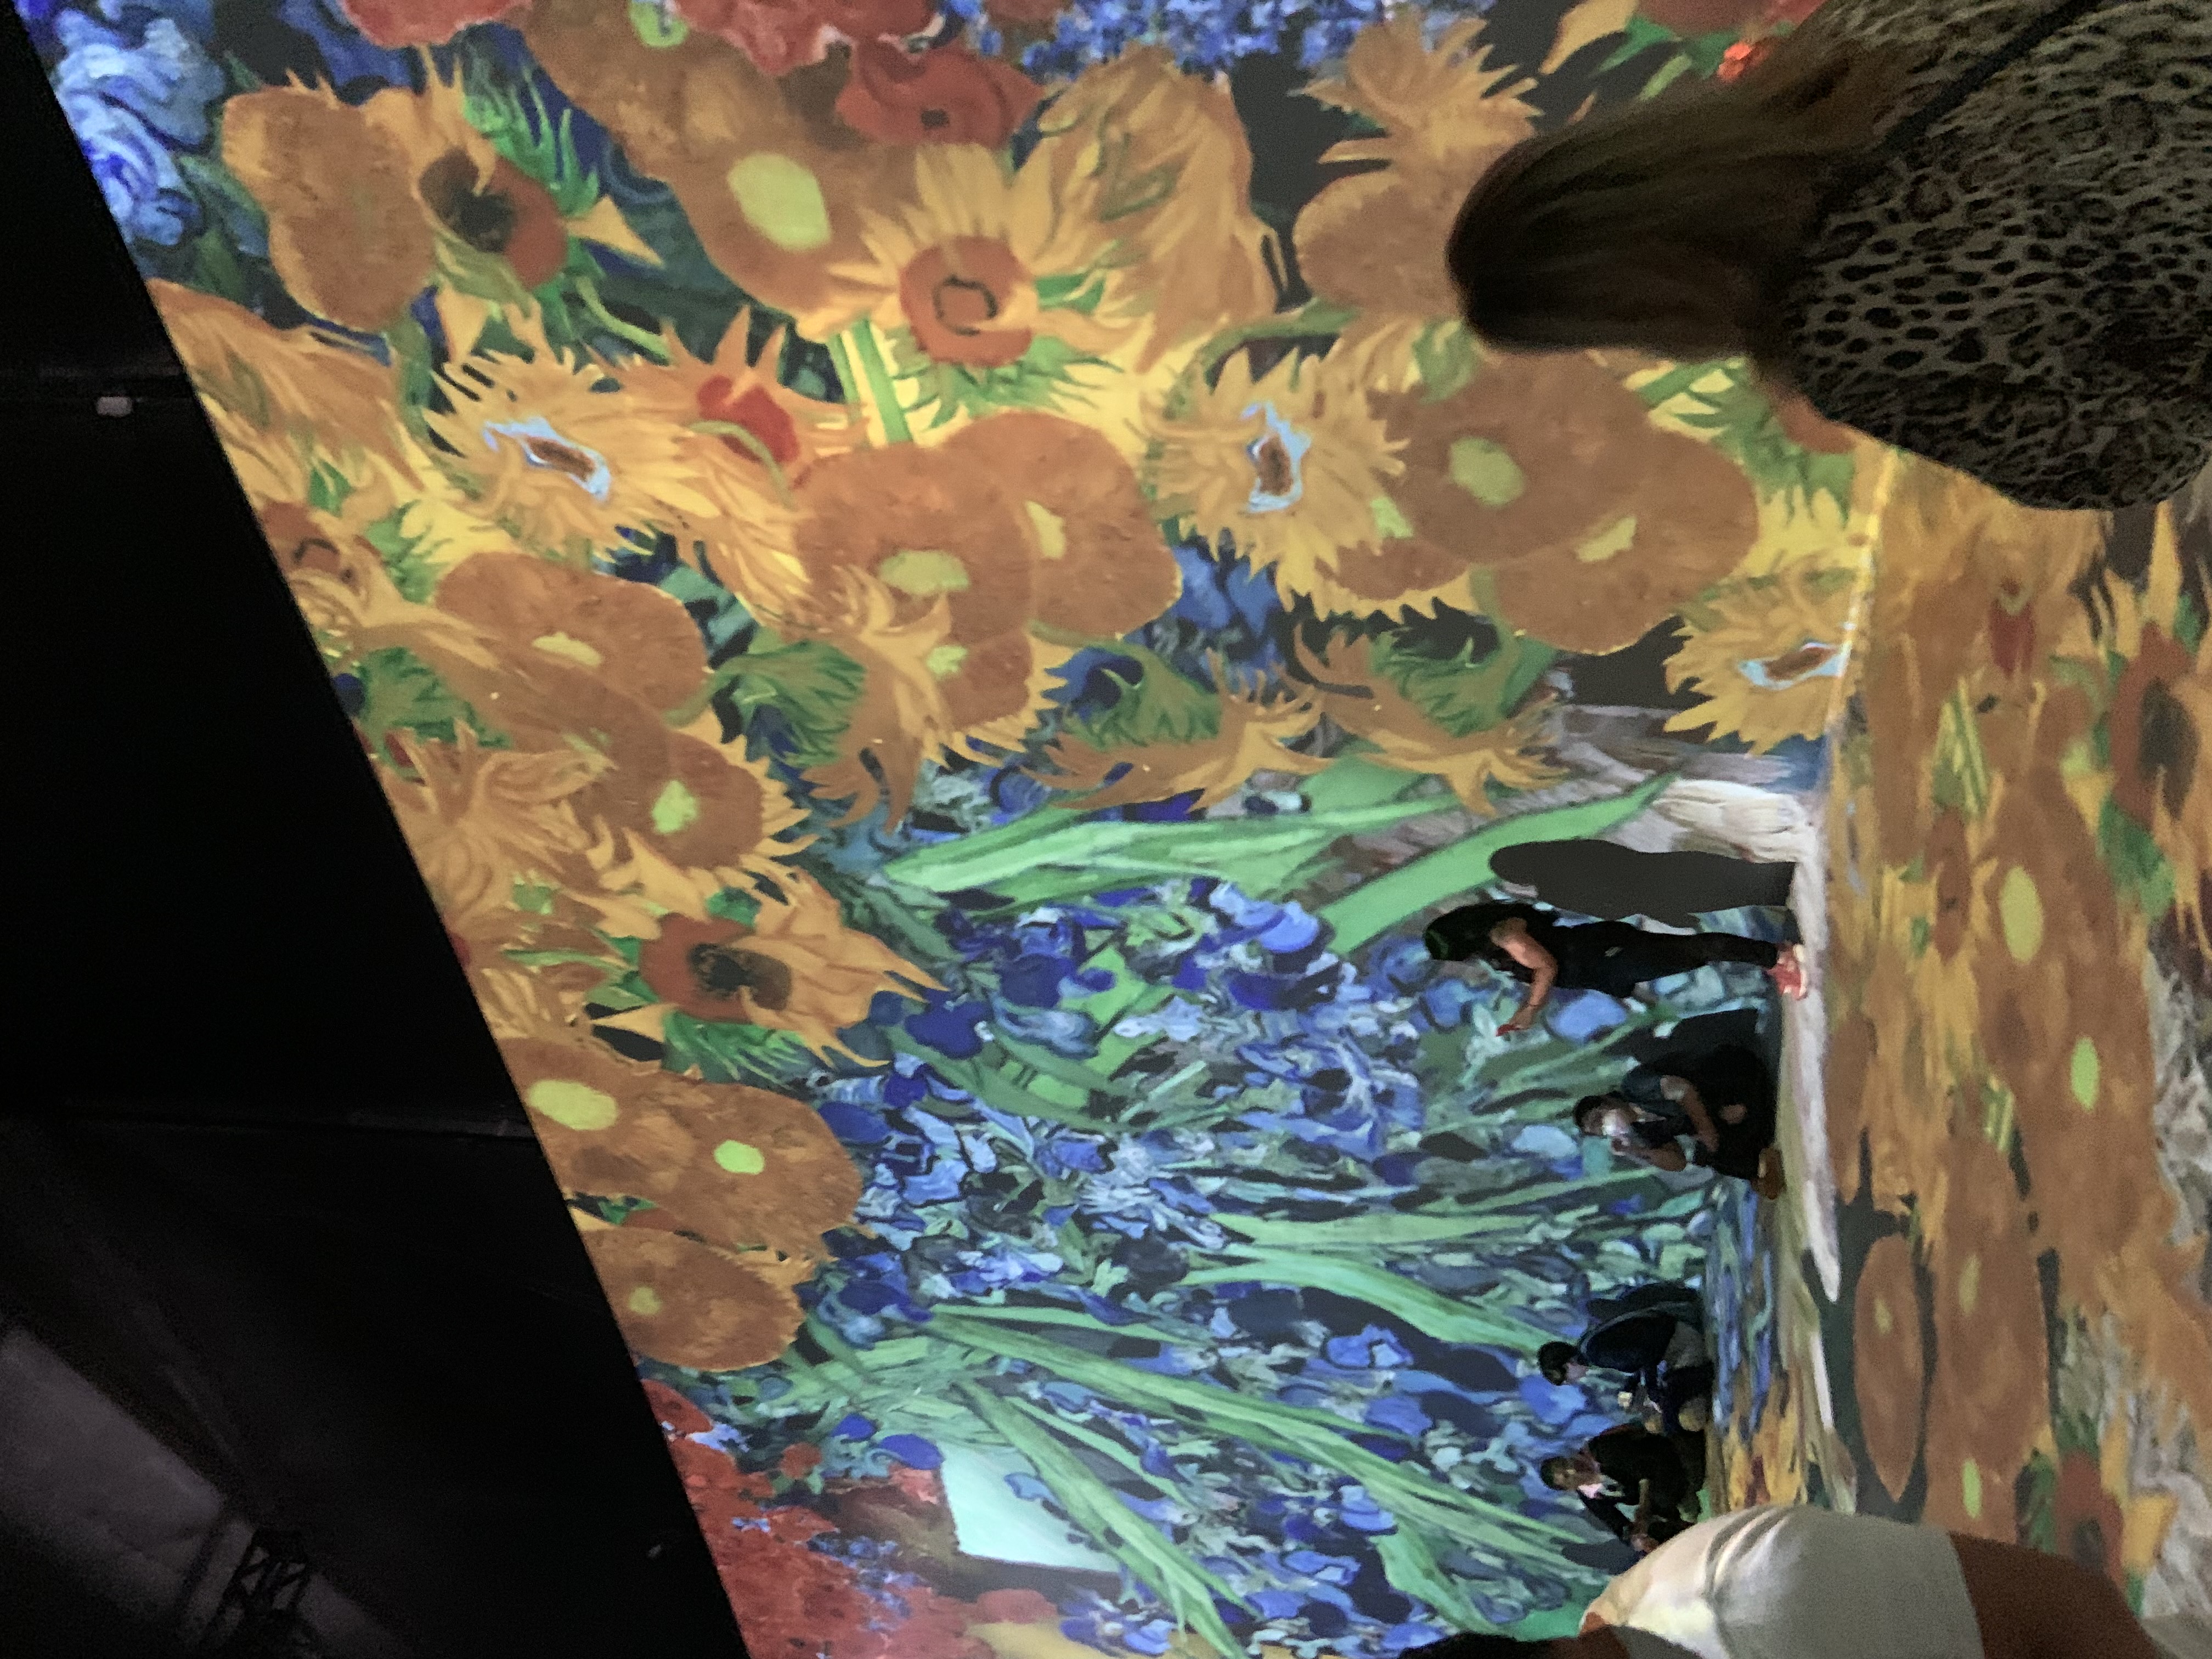 Foto da sala principal da exposição com projeções nas paredes e no chão de flores sobre uma pintura de Van Gogh, para dar efeito de fluidez na transição das imagens durante o vídeo, também contém pessoas tirando fotos e algumas sentadas no chão apreciando.